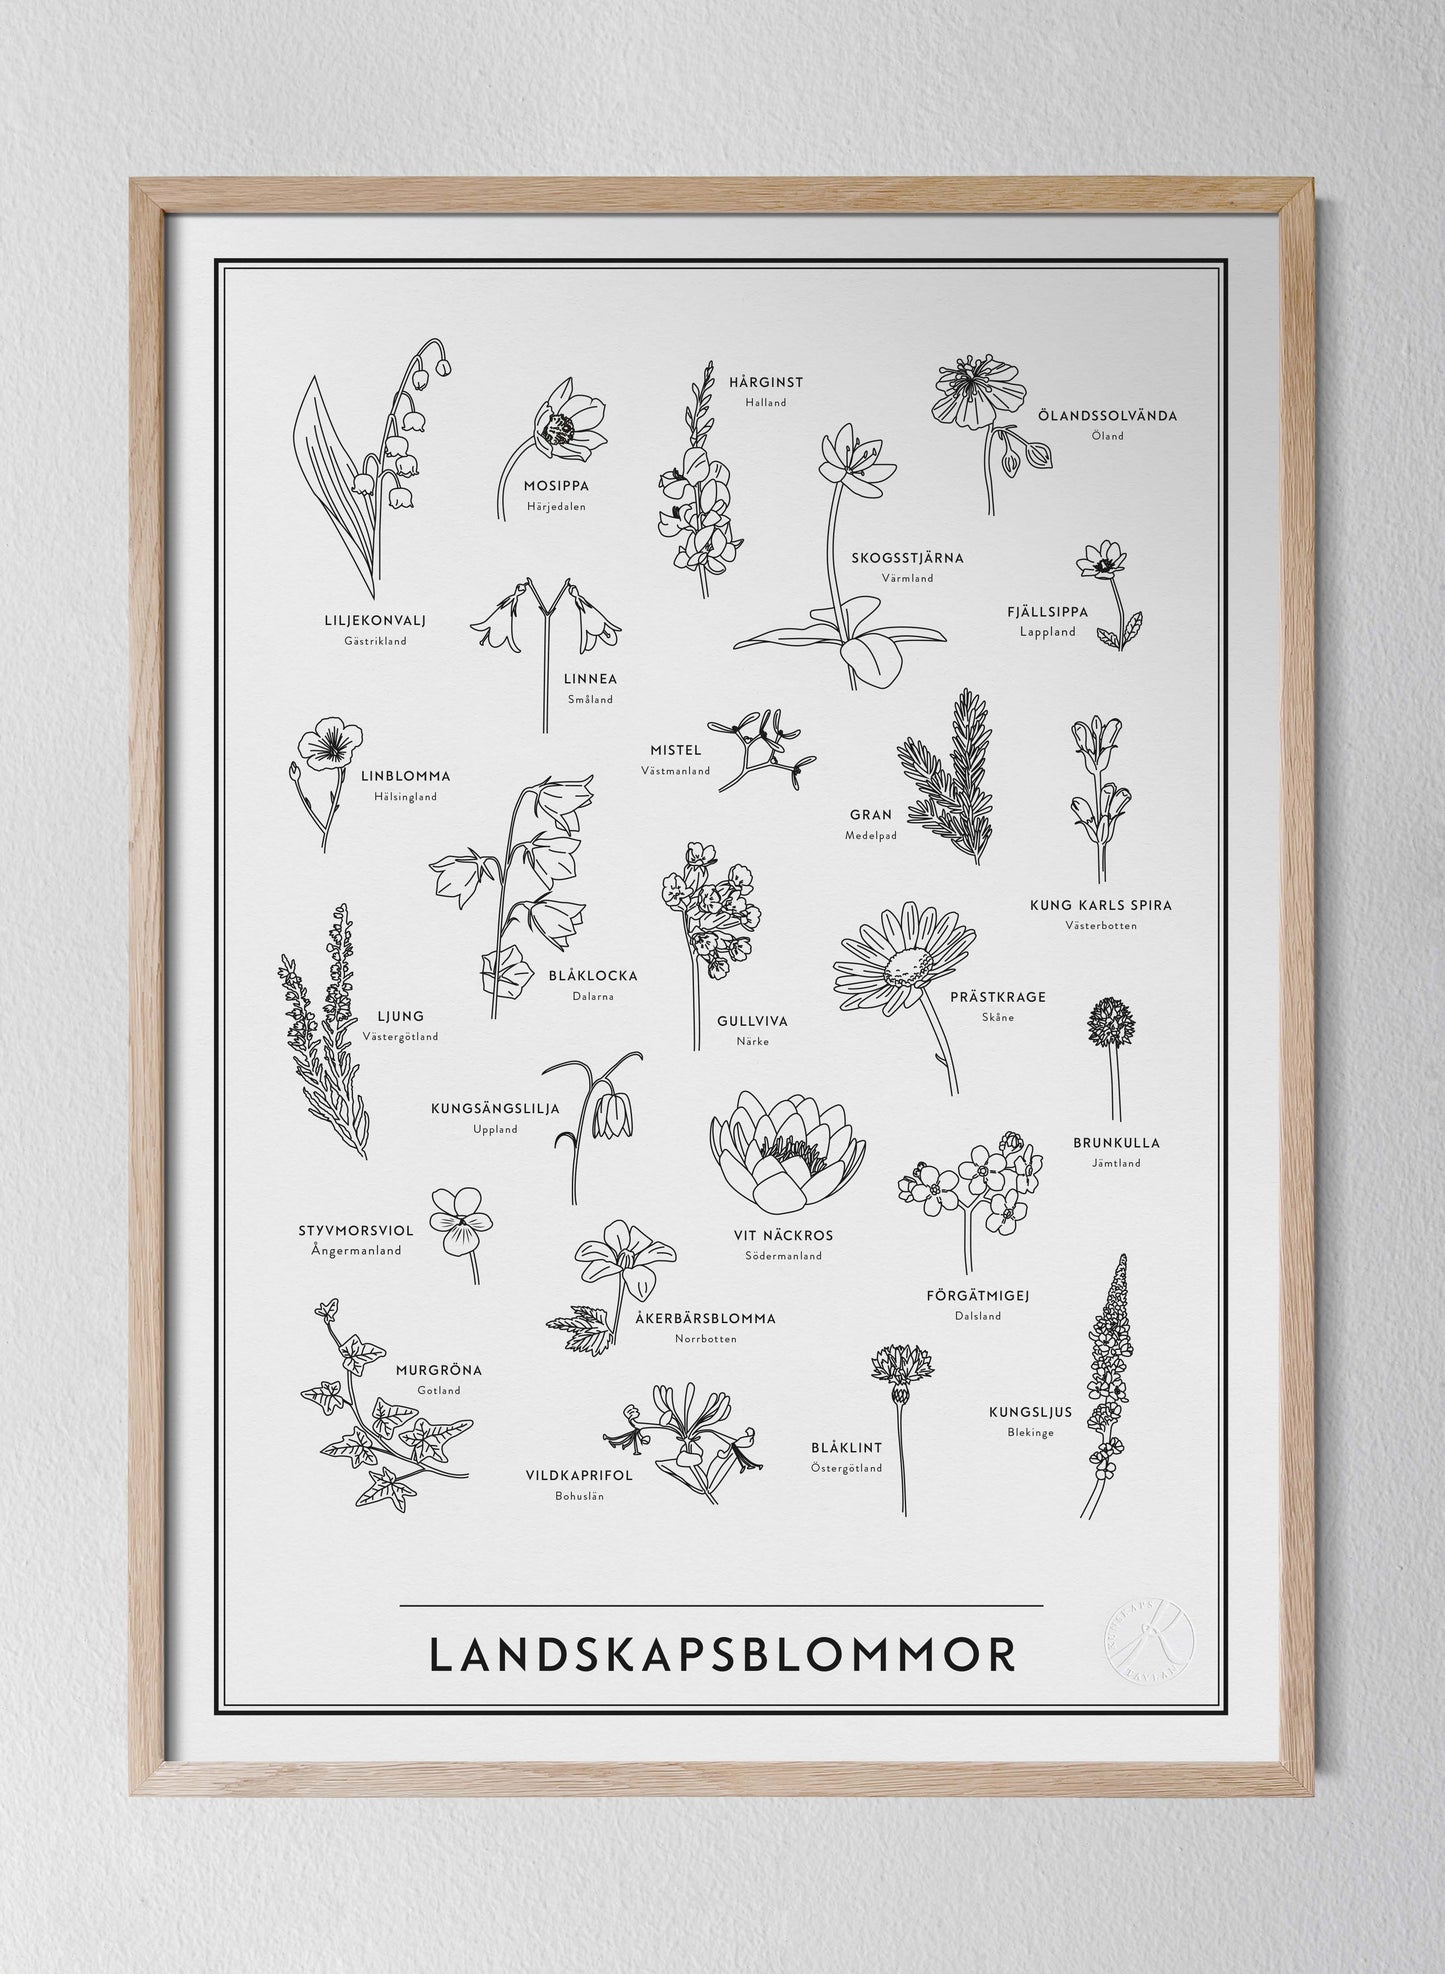 Landskapsblommor - Province Flowers of Sweden in Swedish